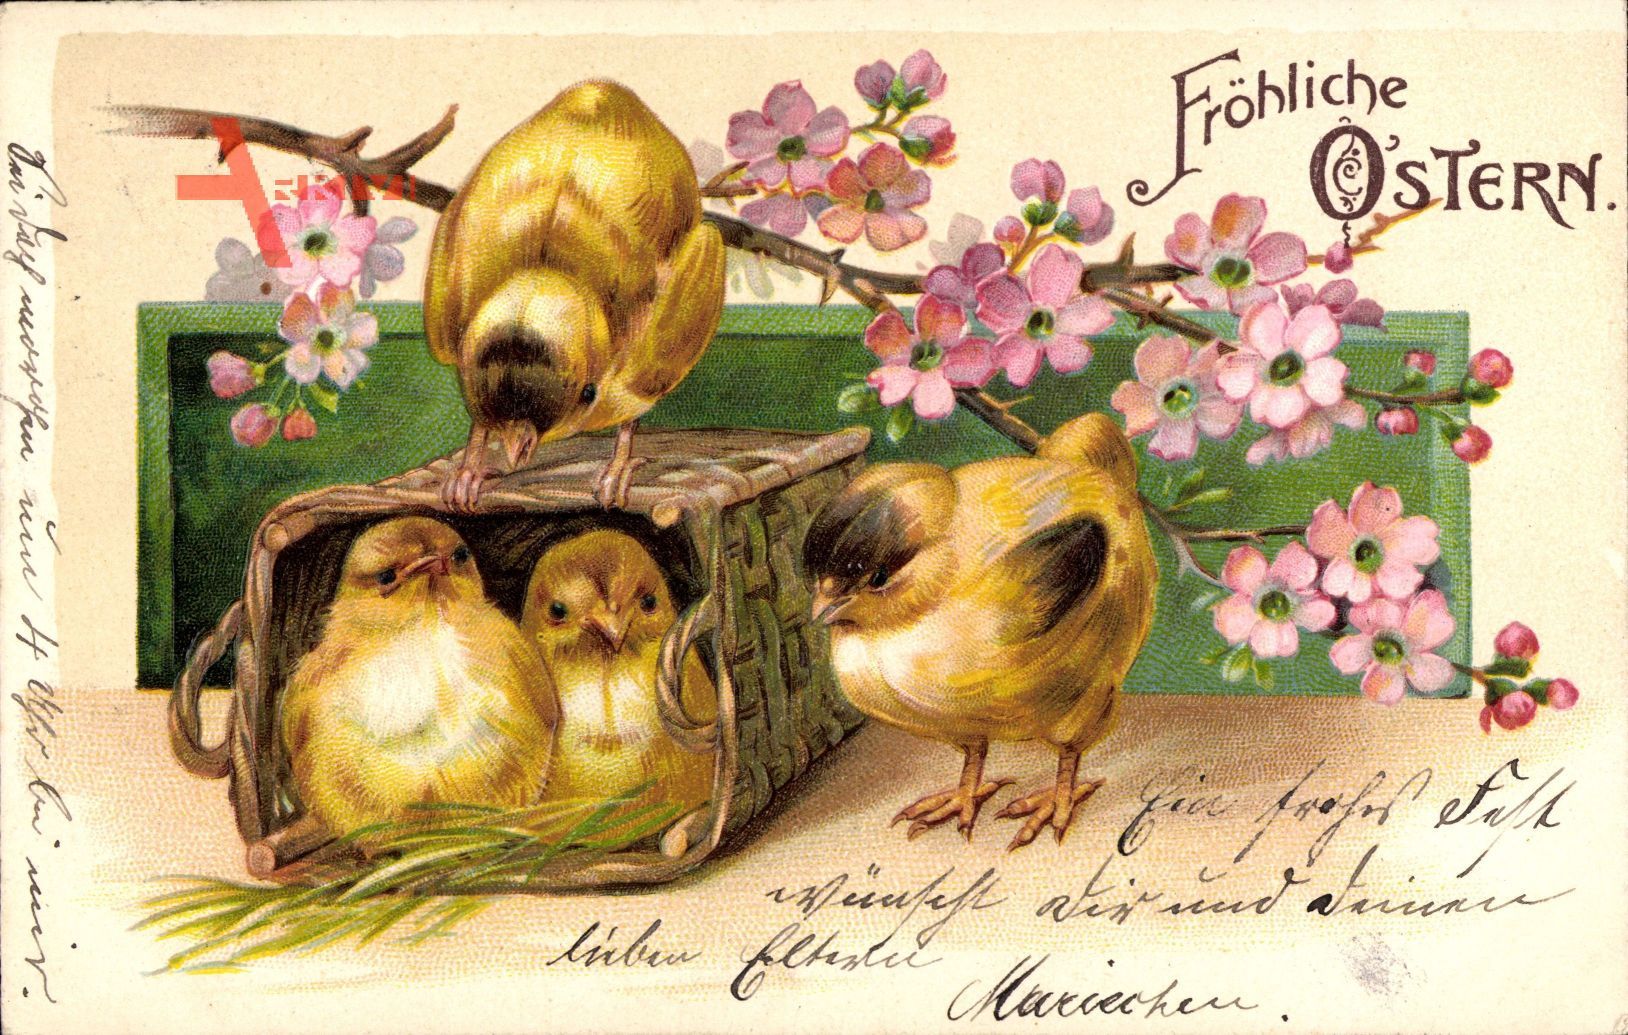 Glückwunsch Ostern, Zwei Küken sitzen in einem Korb, Blütenzweig